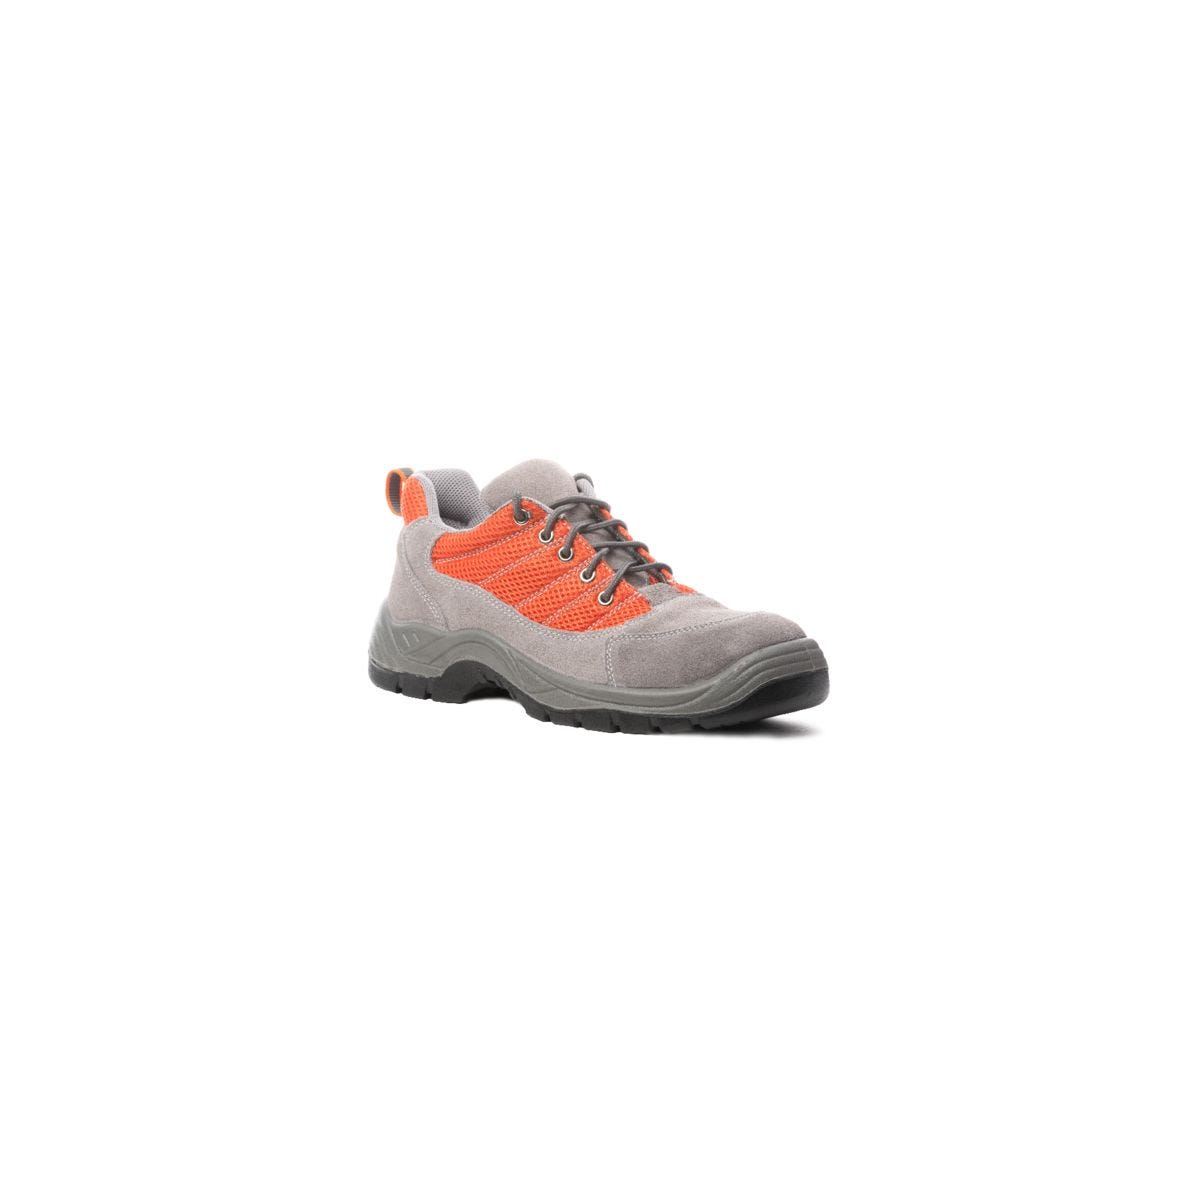 Chaussures de sécurité SPINELLE S1P basse orange - COVERGUARD - Taille 42 0